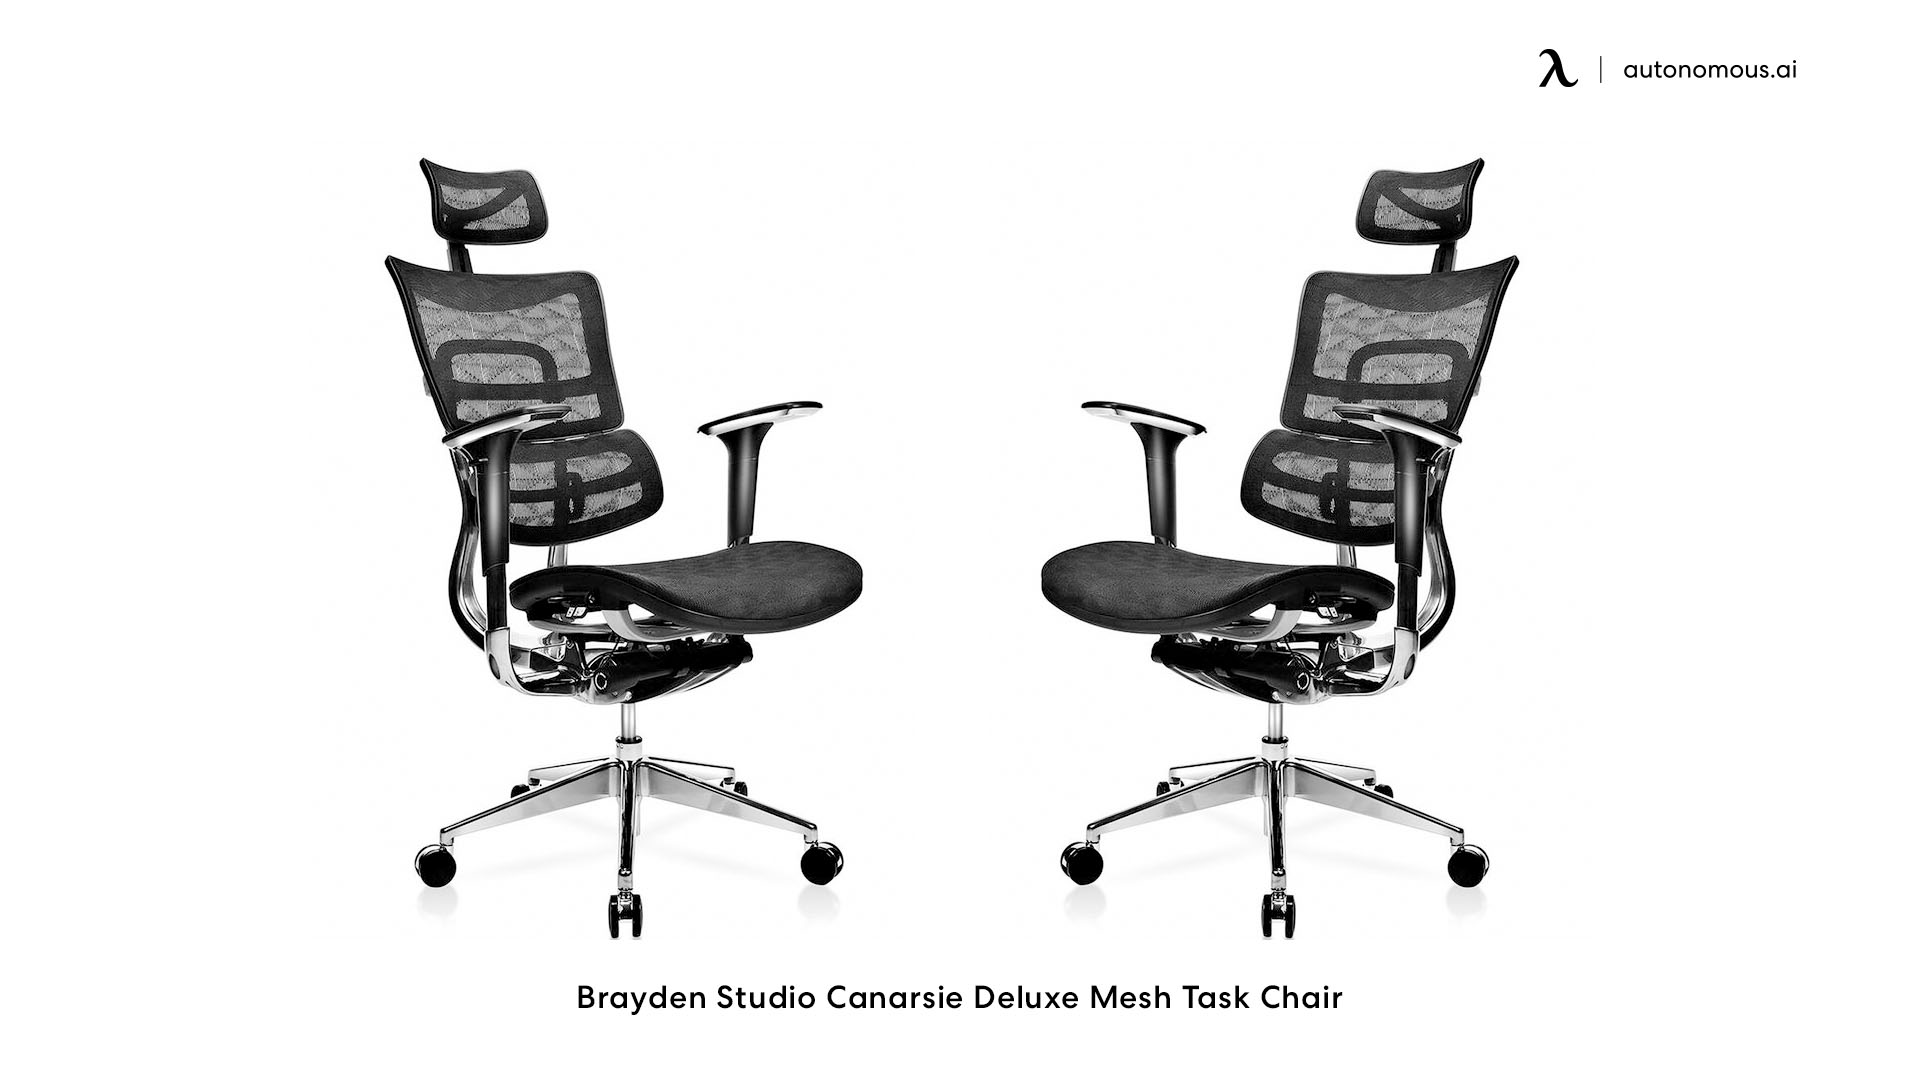 Brayden Studio Canarsie Deluxe Mesh Task Chair